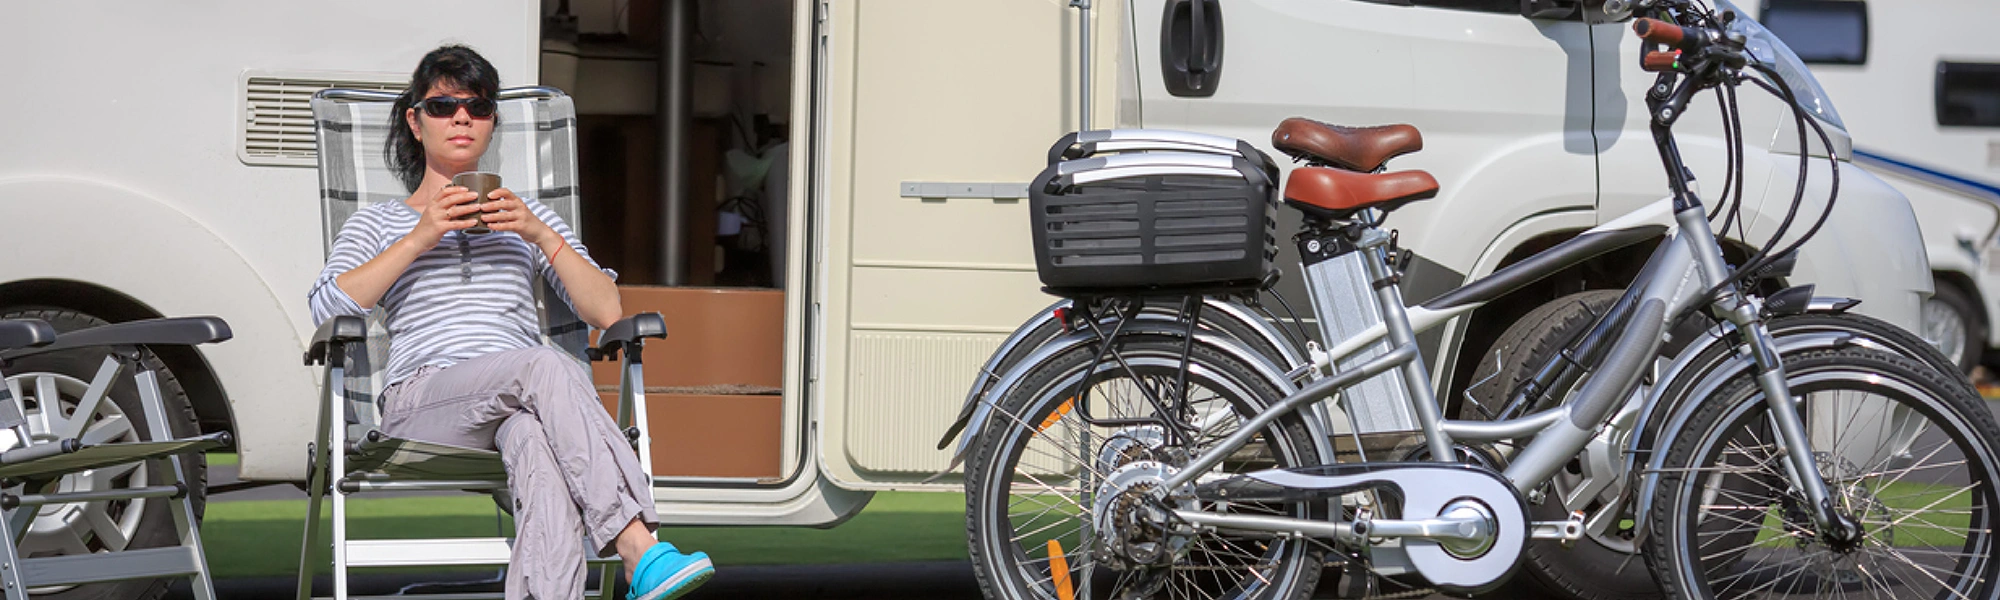 Beschrijvend varkensvlees Joseph Banks Je e-bike meenemen in een camper – zeven tips